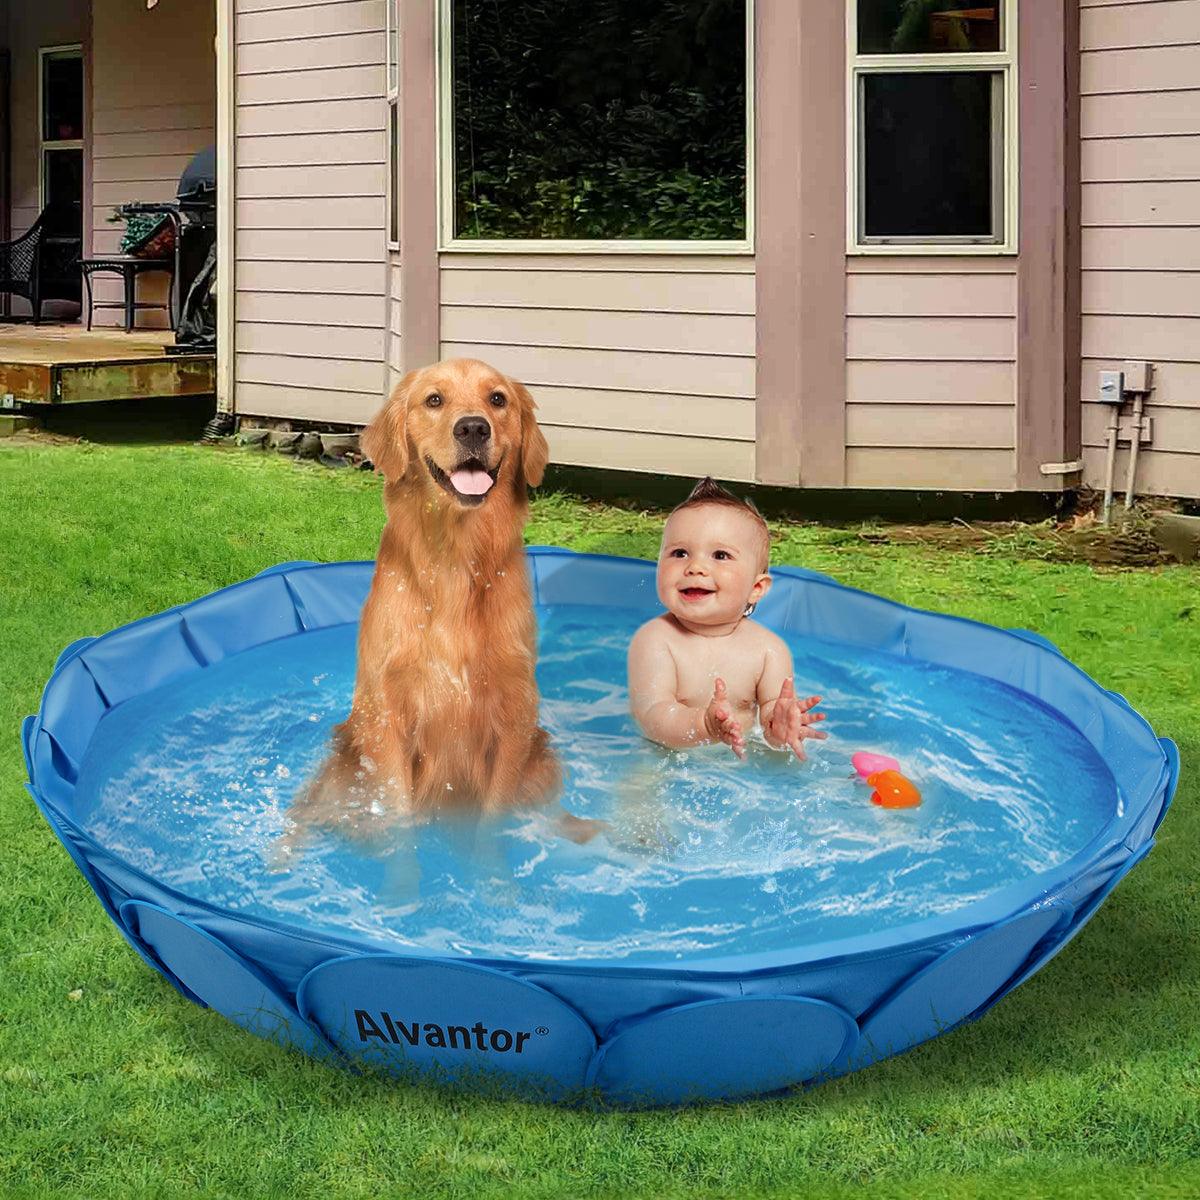 Alvantor Piscina doble para mascotas – Bañera plegable y portátil para  perros – Piscinas infantiles de plástico duro – Diversión en interiores y